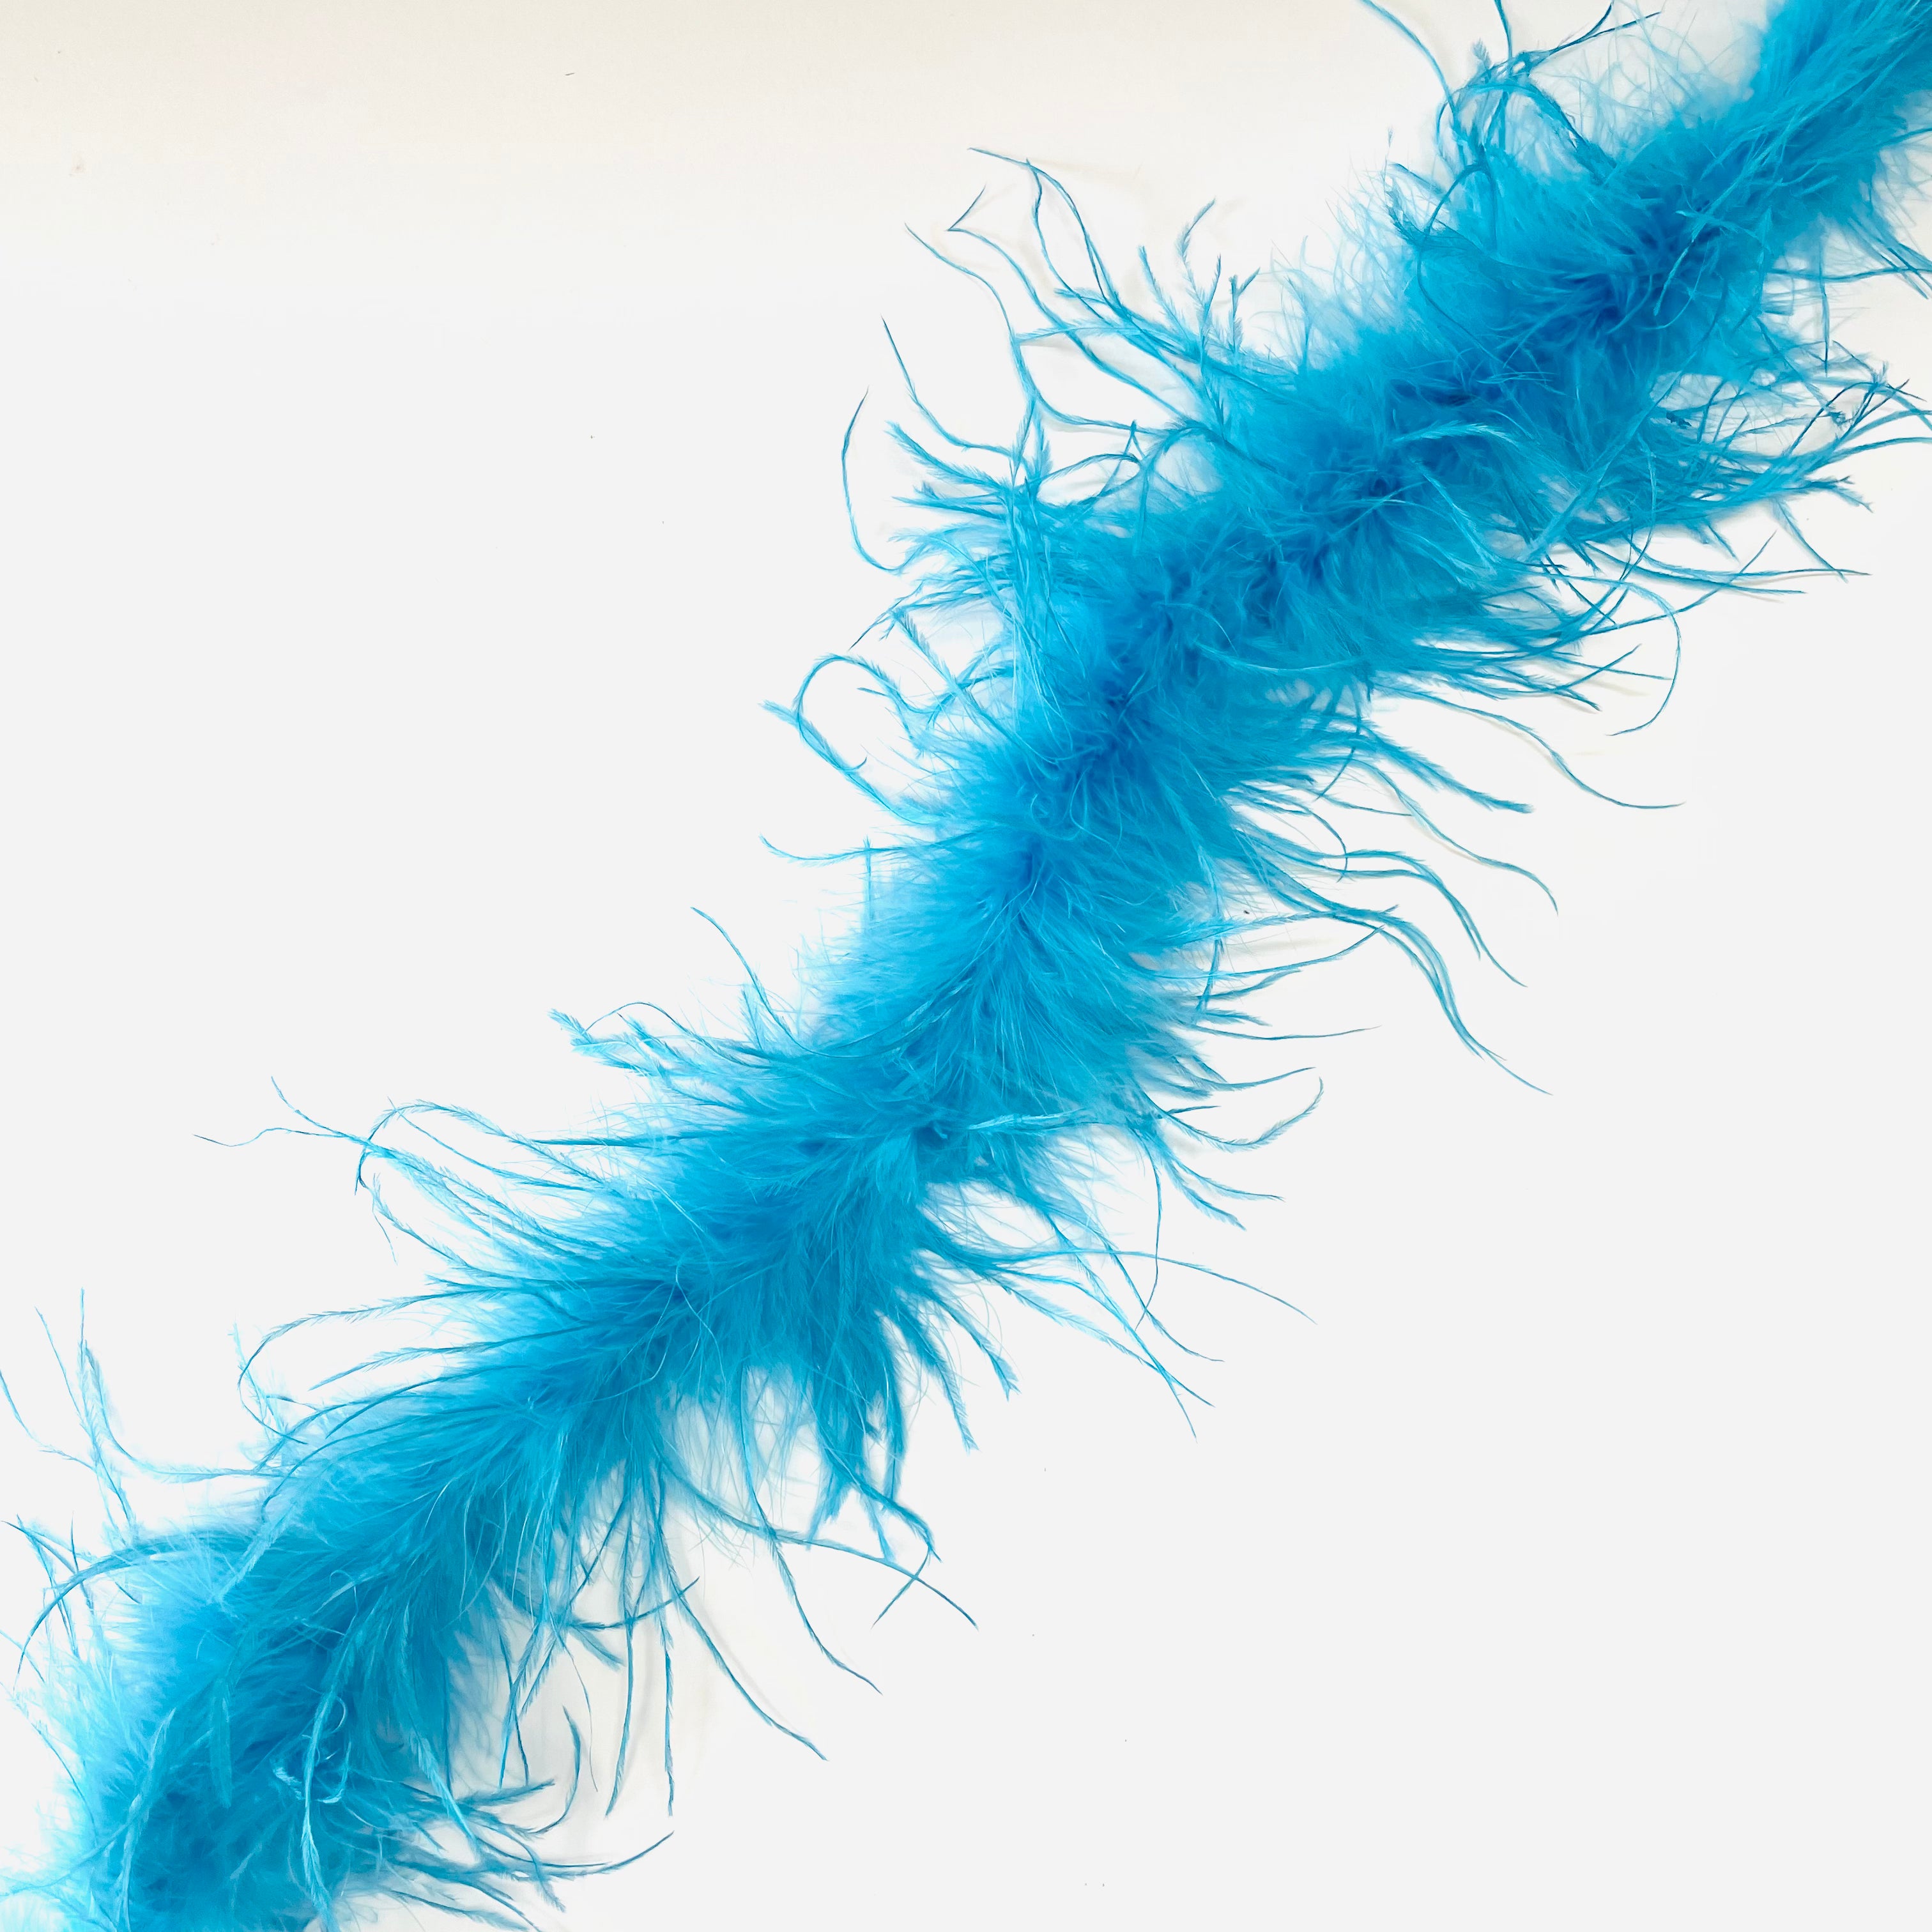 Ostrich & Marabou Feather Boa Trim per 10cm - Aqua